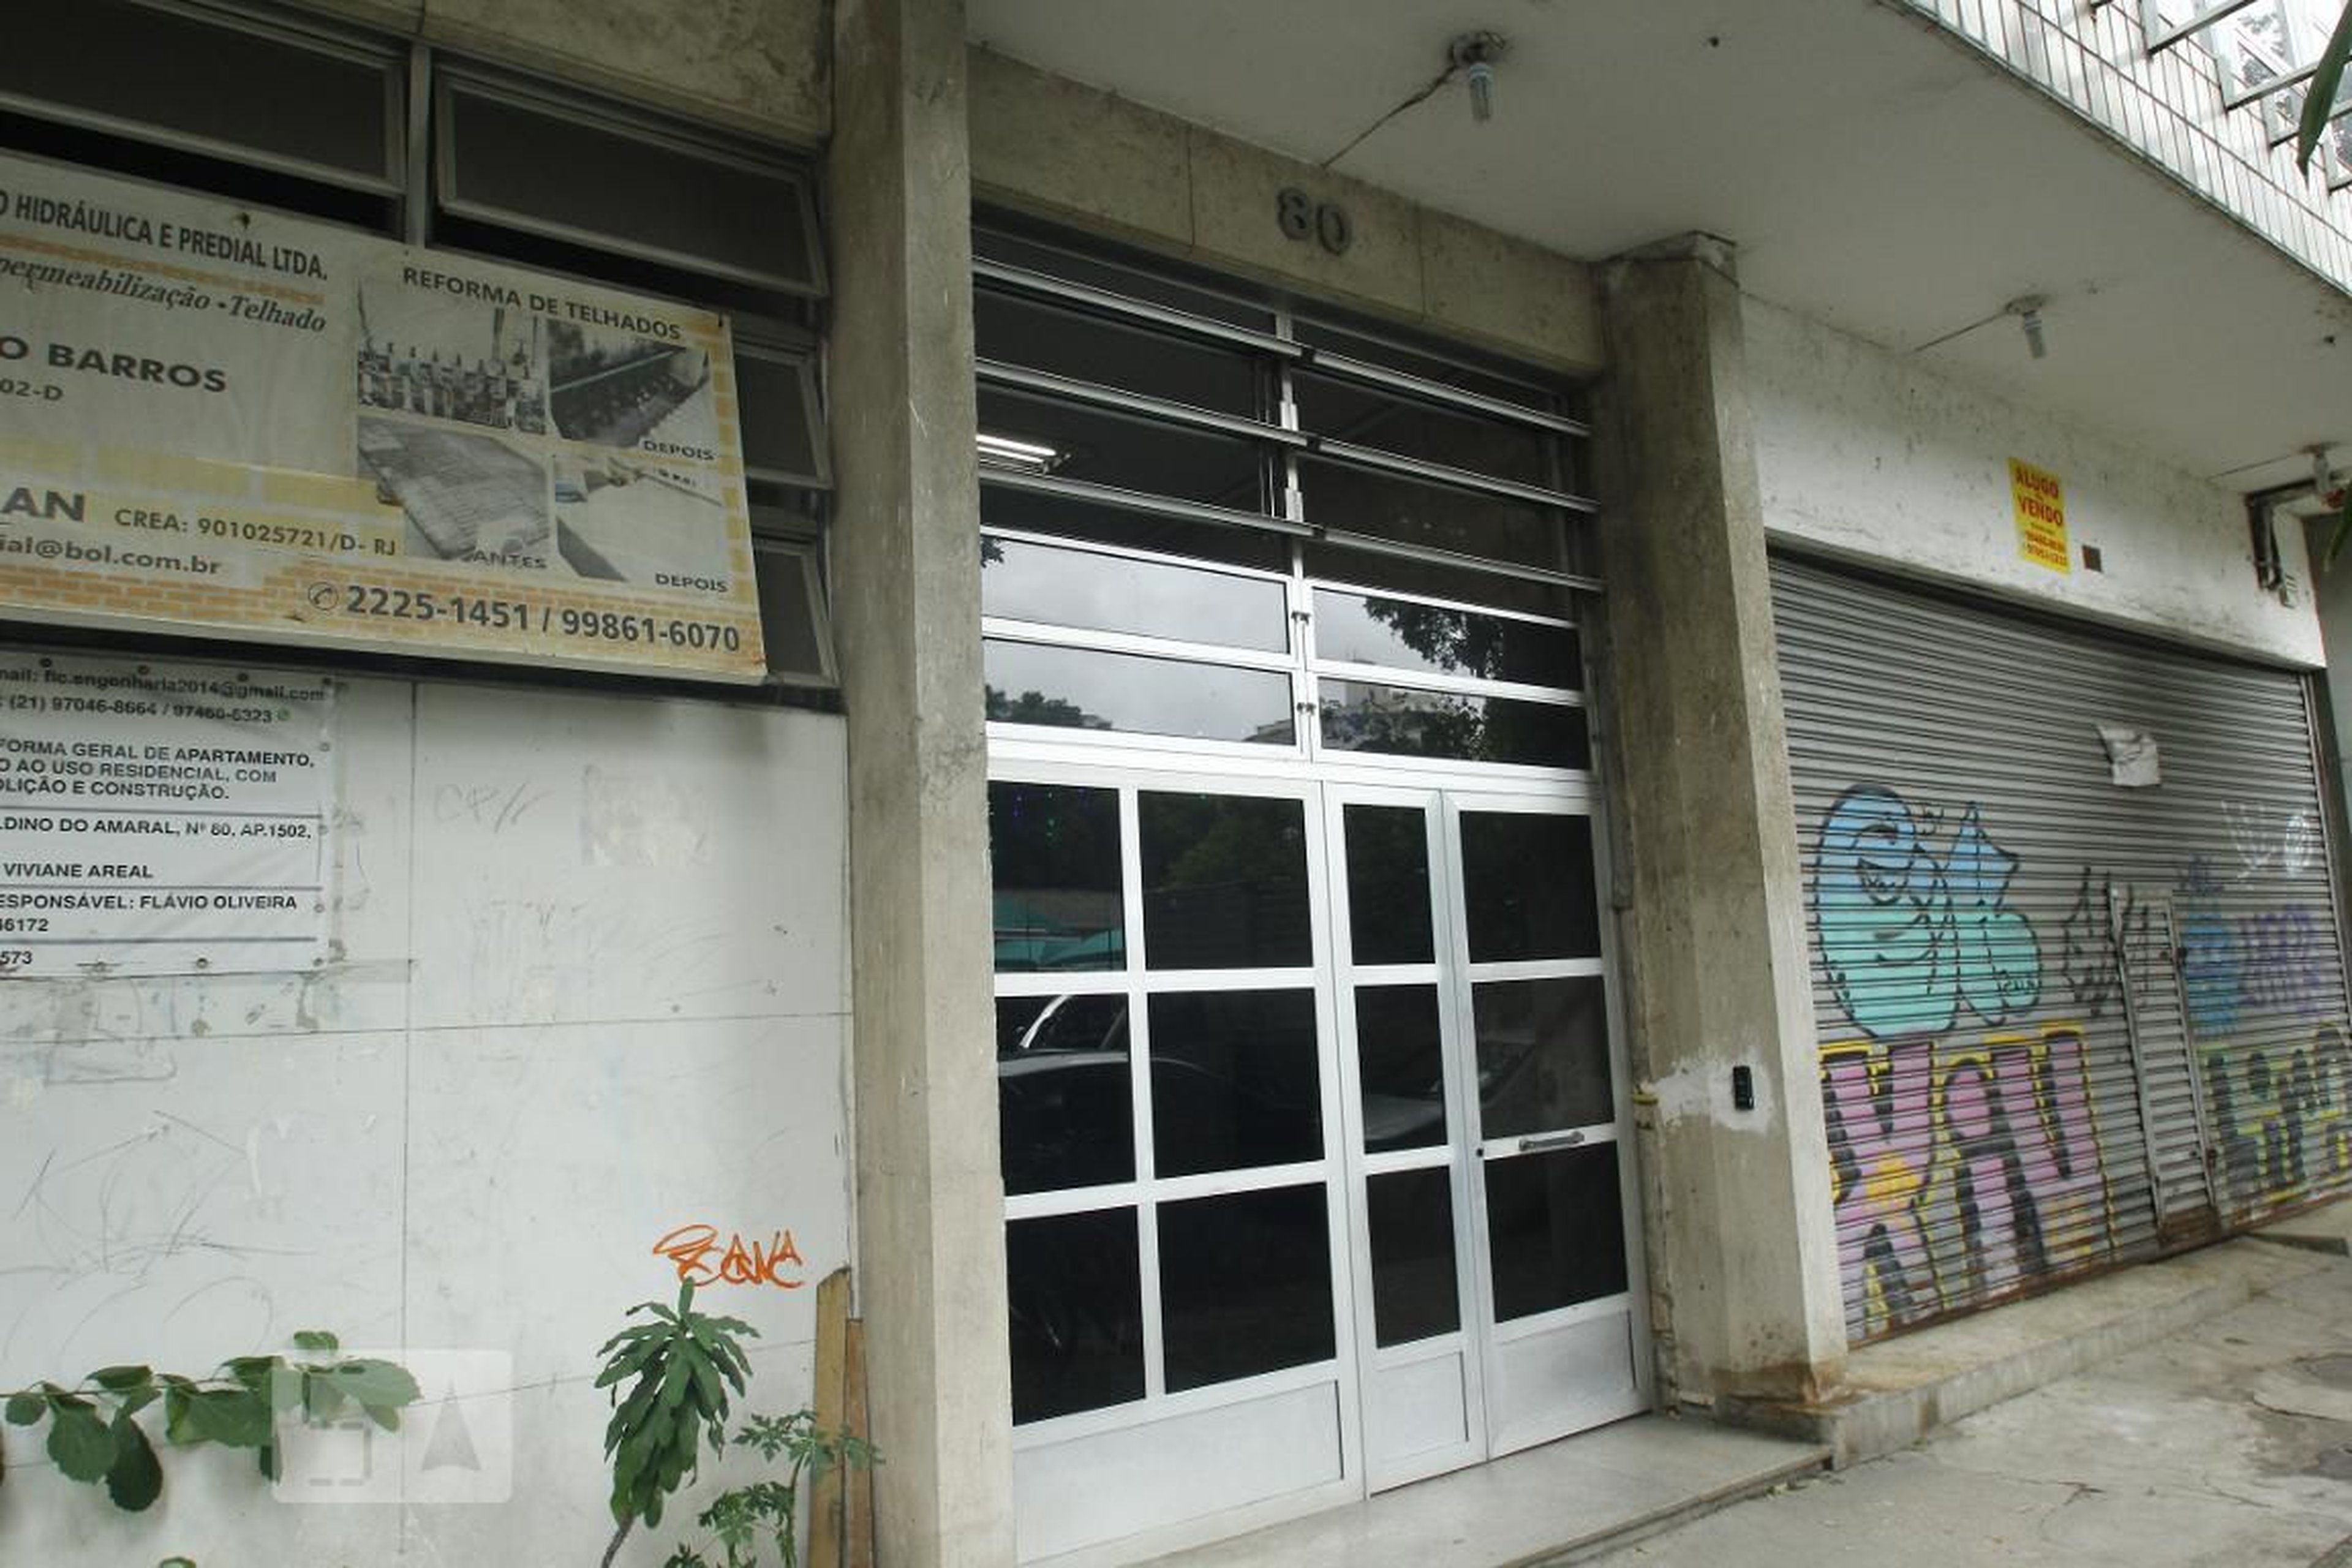 Entrada - Edifício Berilo